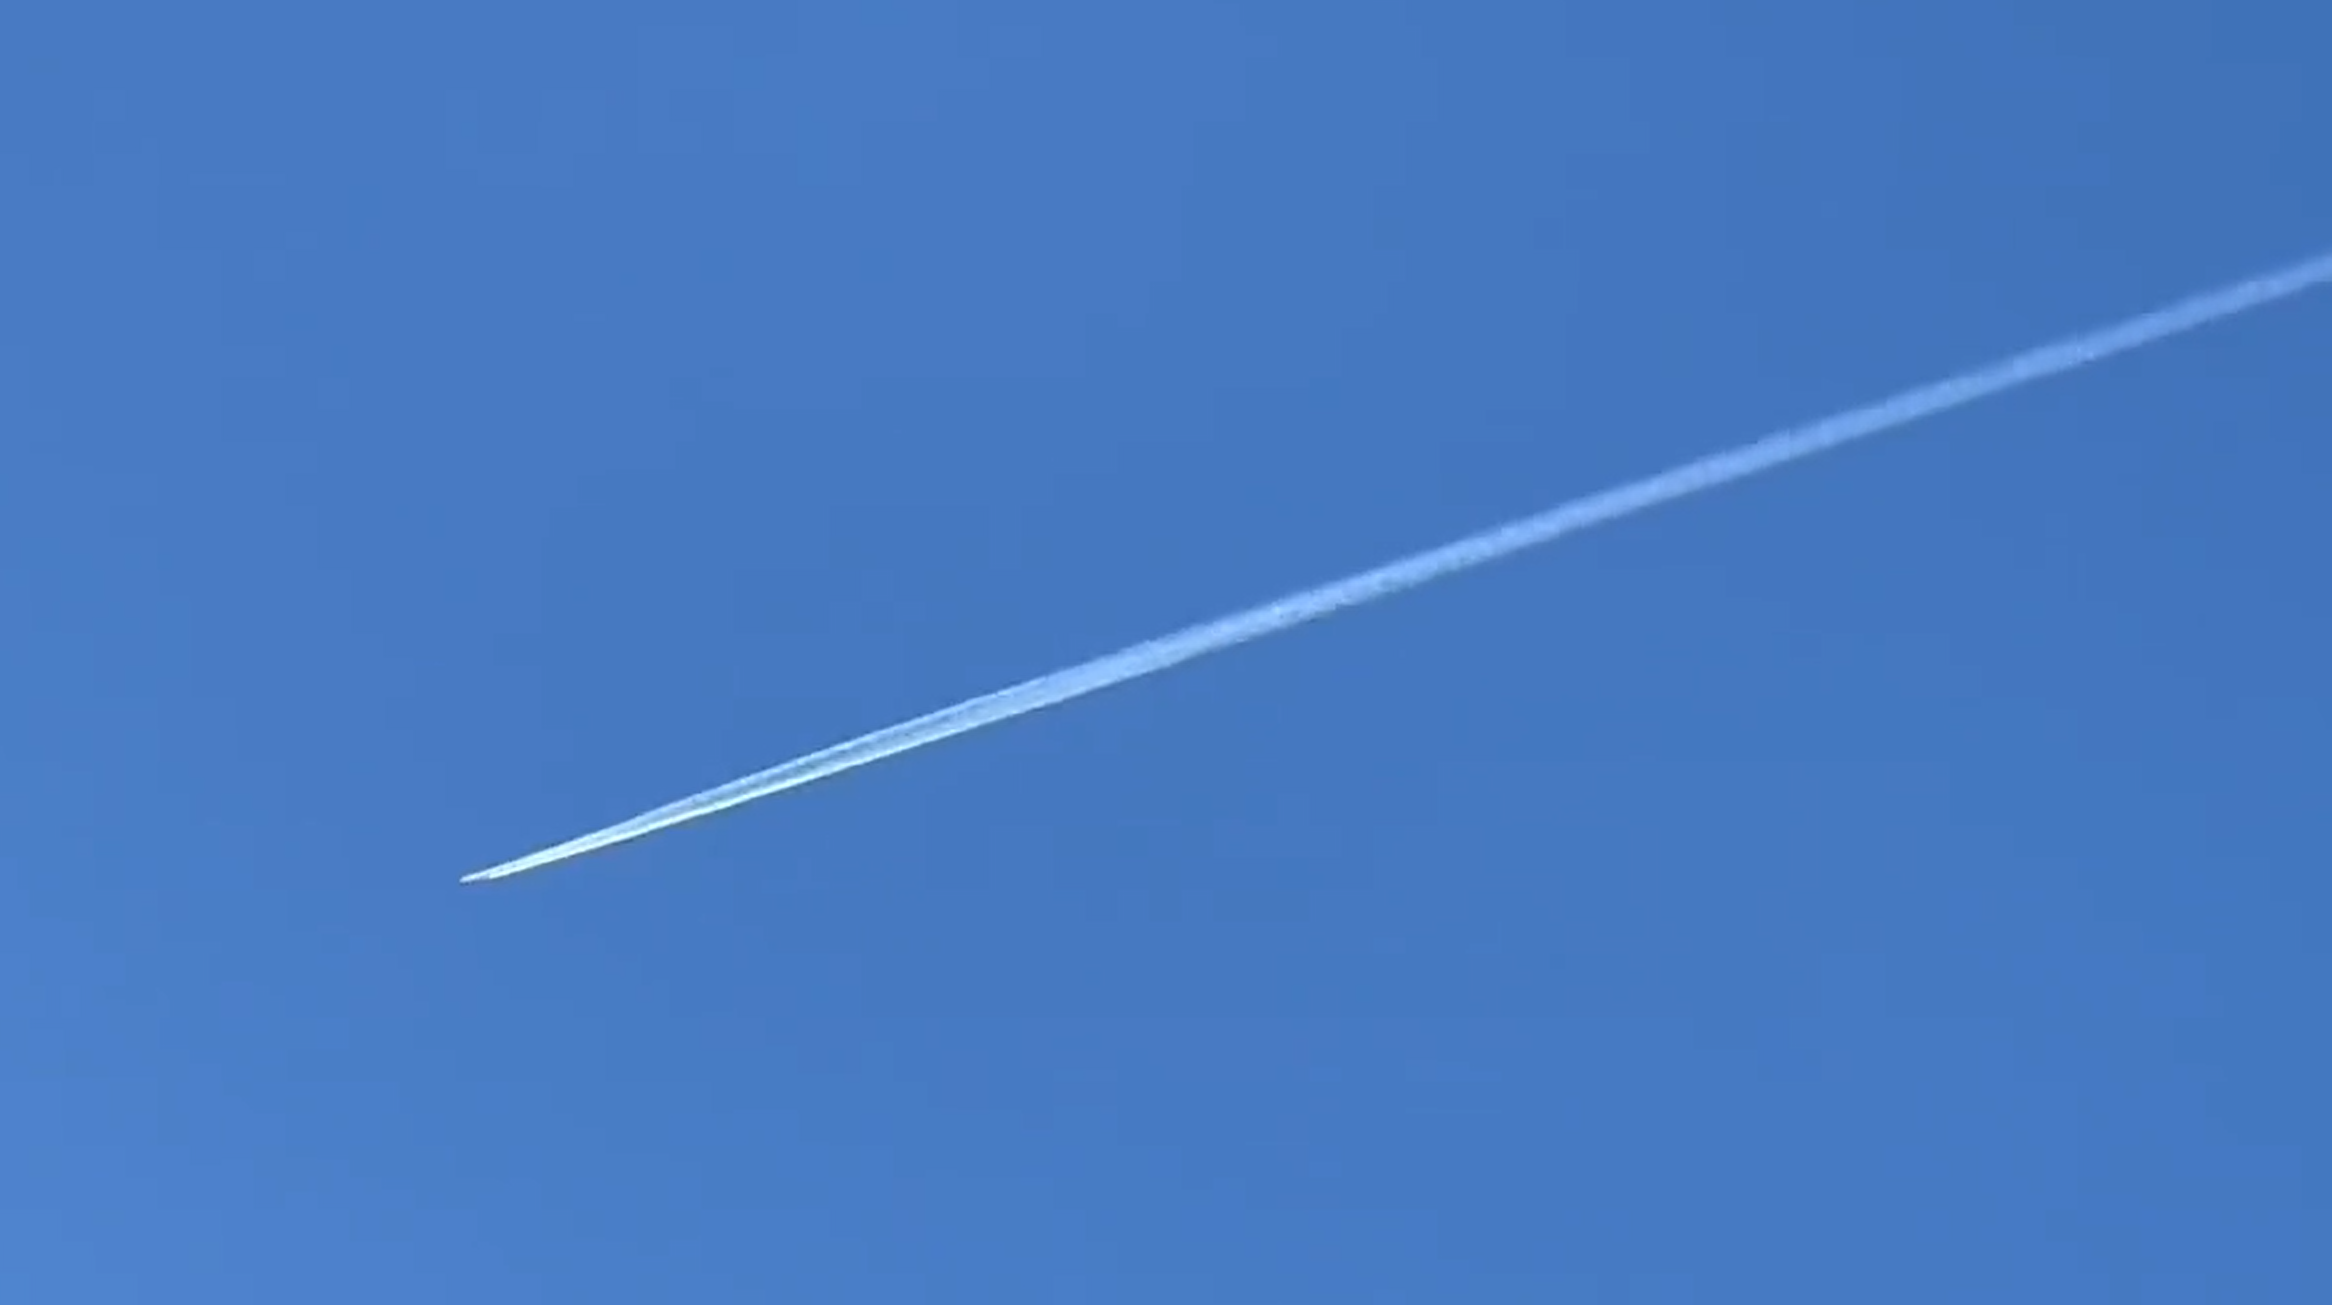 Bild: Rachel Ashley, Jet over SC February 4 2023, CC BY-SA 4.0, via Wikimedia Commons, (keine Änderungen vorgenommen)